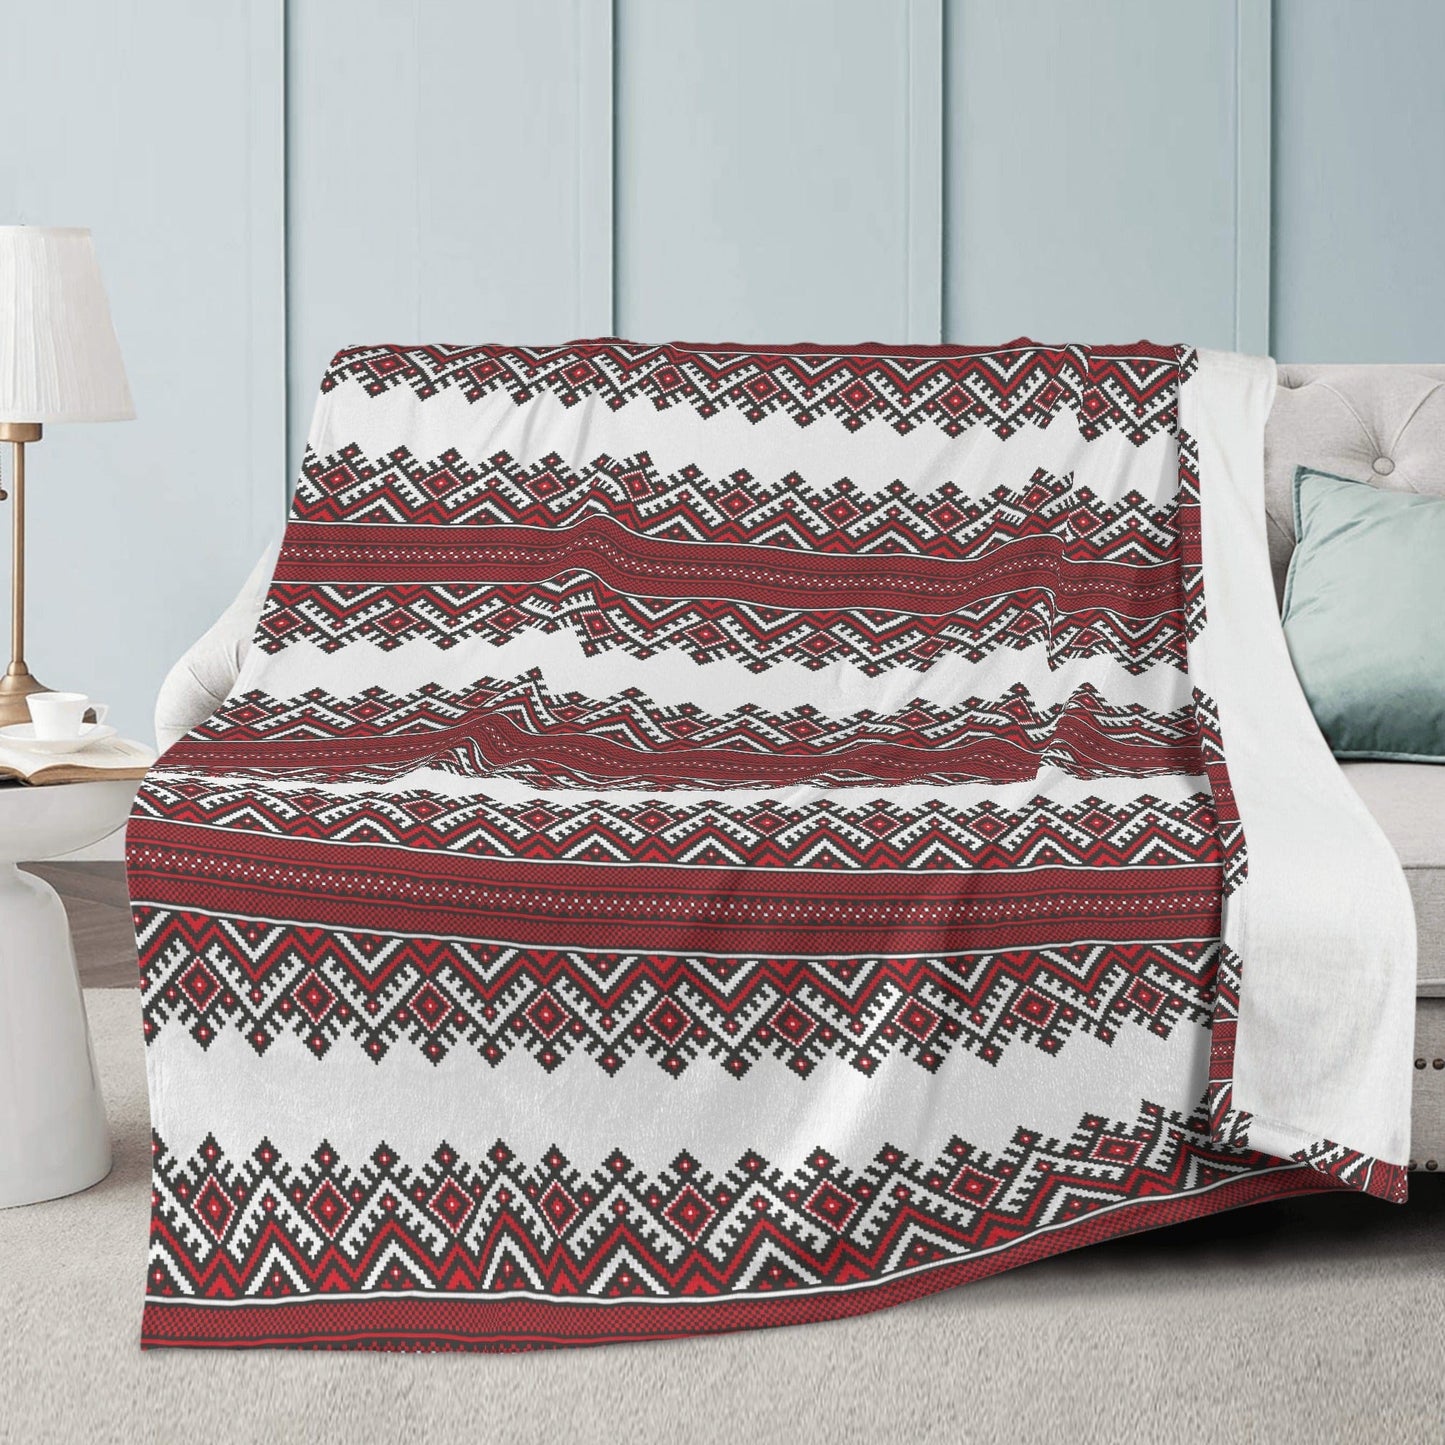 Red and White Ukrainian Folk Art Soft Polyester Premium Fleece Blanket